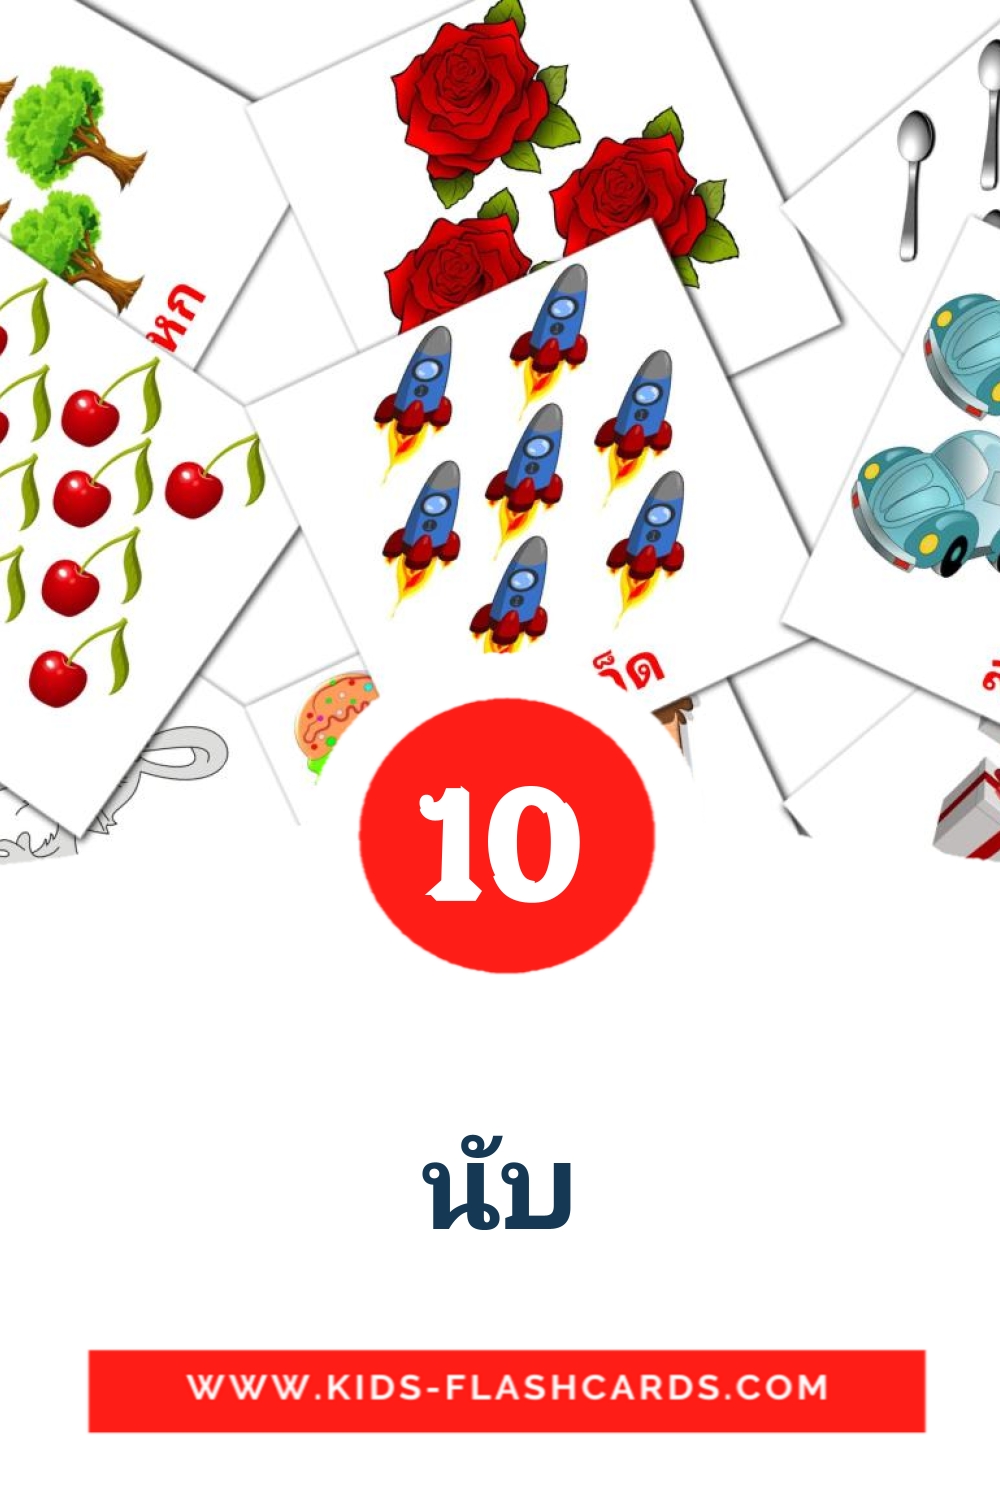 10 cartes illustrées de นับ pour la maternelle en thaïlandais